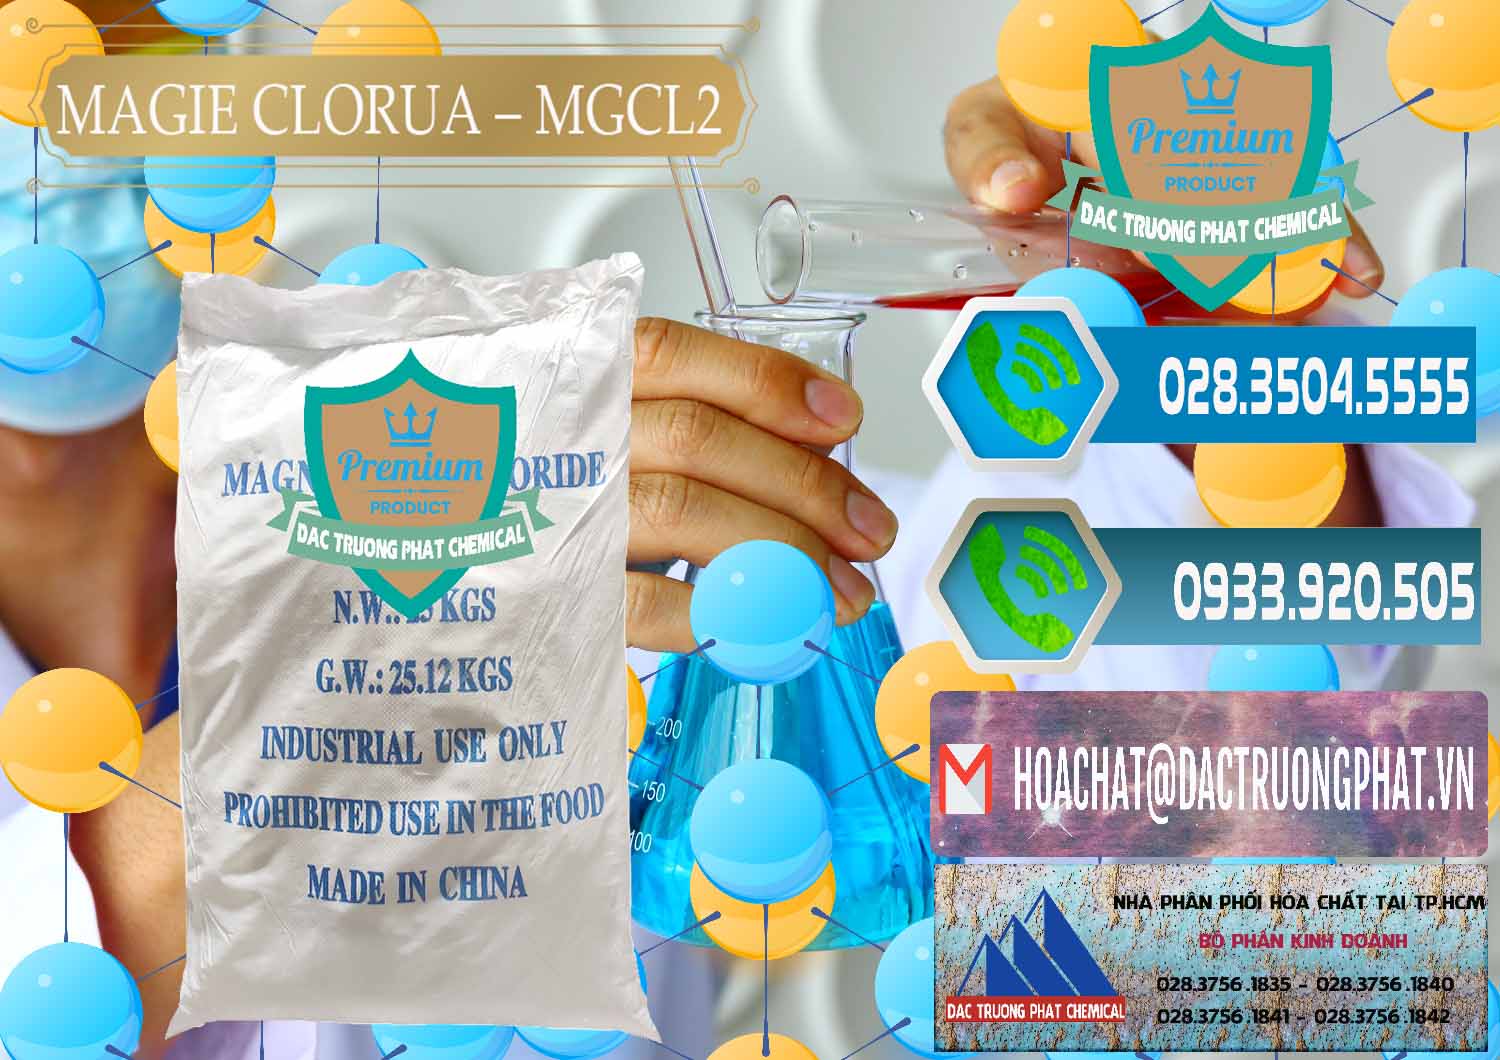 Nơi chuyên cung ứng & bán Magie Clorua – MGCL2 96% Dạng Vảy Trung Quốc China - 0091 - Chuyên kinh doanh và phân phối hóa chất tại TP.HCM - congtyhoachat.net